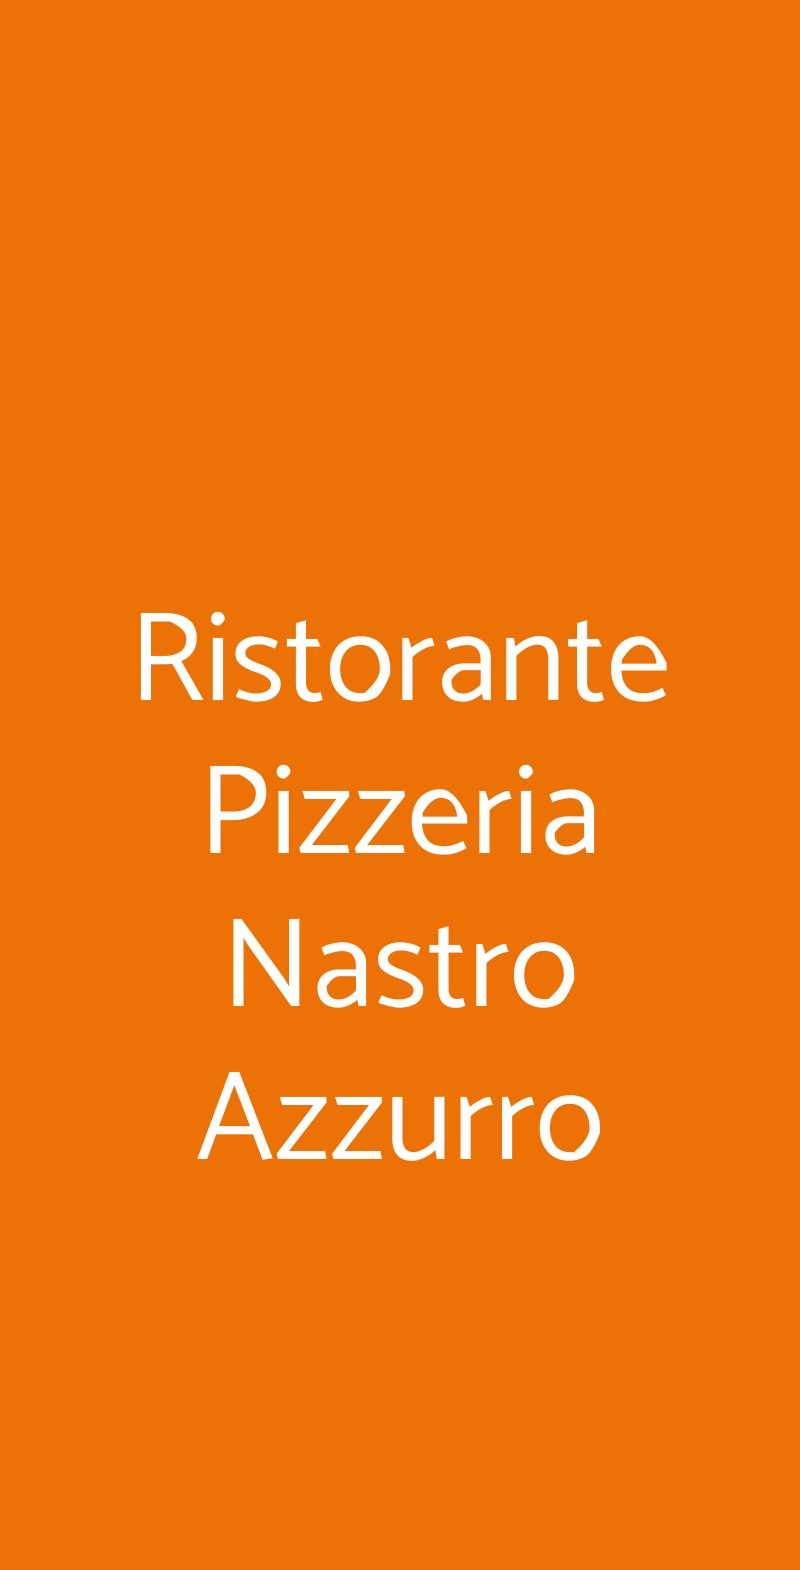 Ristorante Pizzeria Nastro Azzurro Verona menù 1 pagina